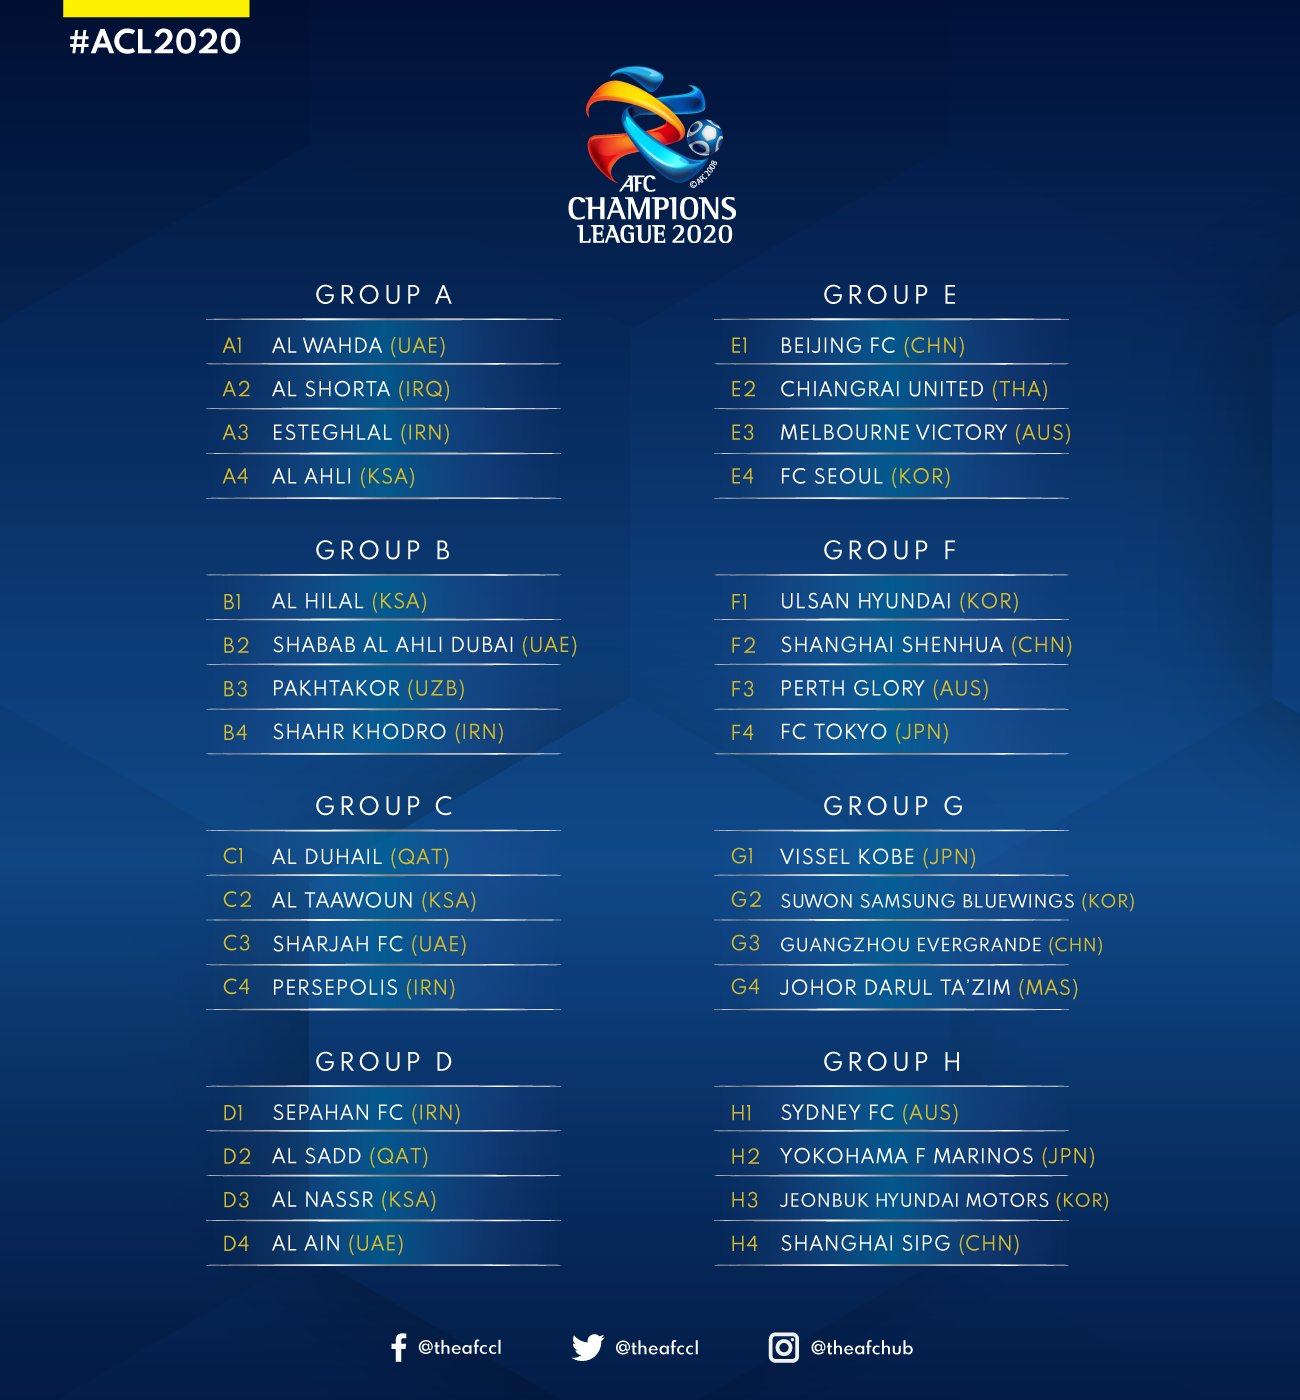 رسميا وبعد اكتمال المجموعات الاتحاد الآسيوي يعلن قراره بخصوص ملاعب الأندية الإيرانية في دوري أبطال آسيا إرم نيوز